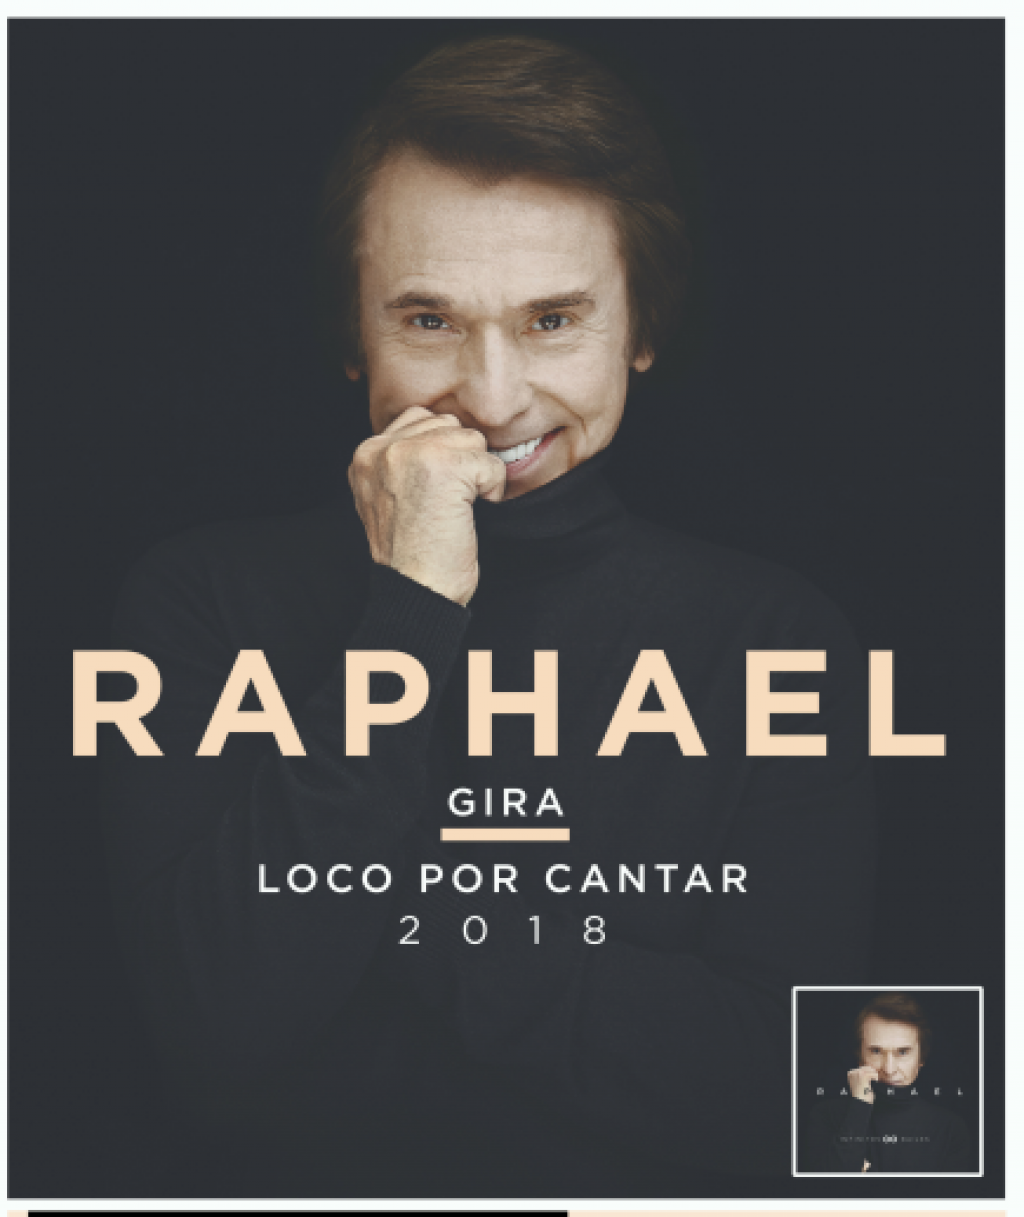  Raphael canta en Valencia en septiembre